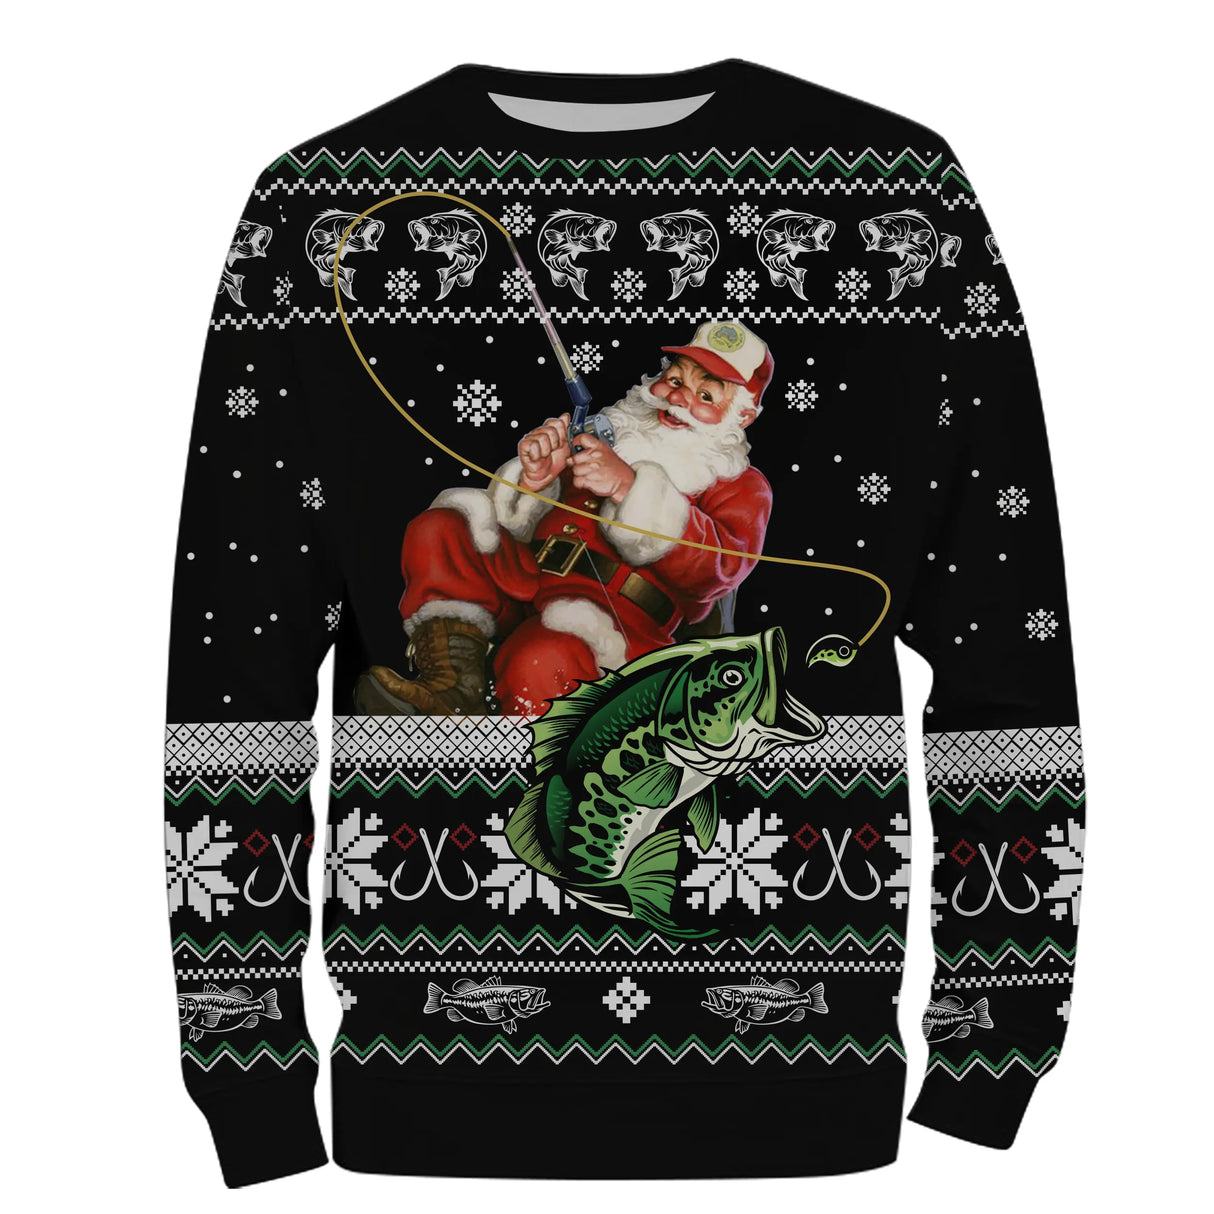 Suéter navideño Peach Santa, el mejor regalo de Navidad familiar - CT12112238